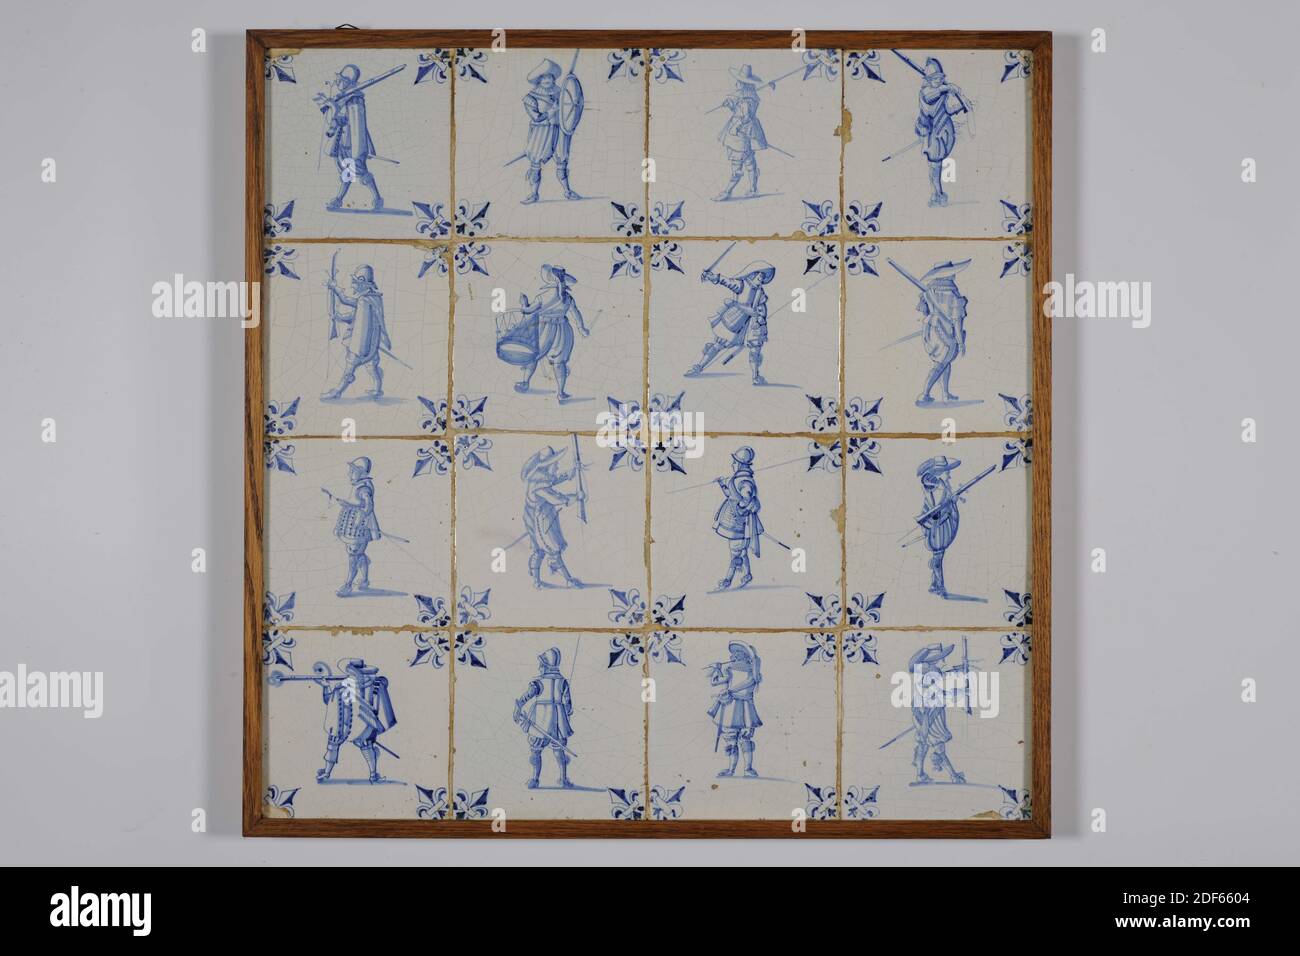 Champ de tuiles, Anonyme, deuxième quart du XVIIe siècle, glaçure d'étain, faïence, avec cadre: 54 x 54 x 2,6cm (540 x 540 x 26mm), soldat, champ de tuiles de seize tuiles (quatre par quatre) de faïence recouvertes de glaçure d'étain et peintes en bleu. Un soldat est représenté au centre sur les carreaux. Les tuiles ont un nénuphar comme motif de coin, Date 1995 Banque D'Images